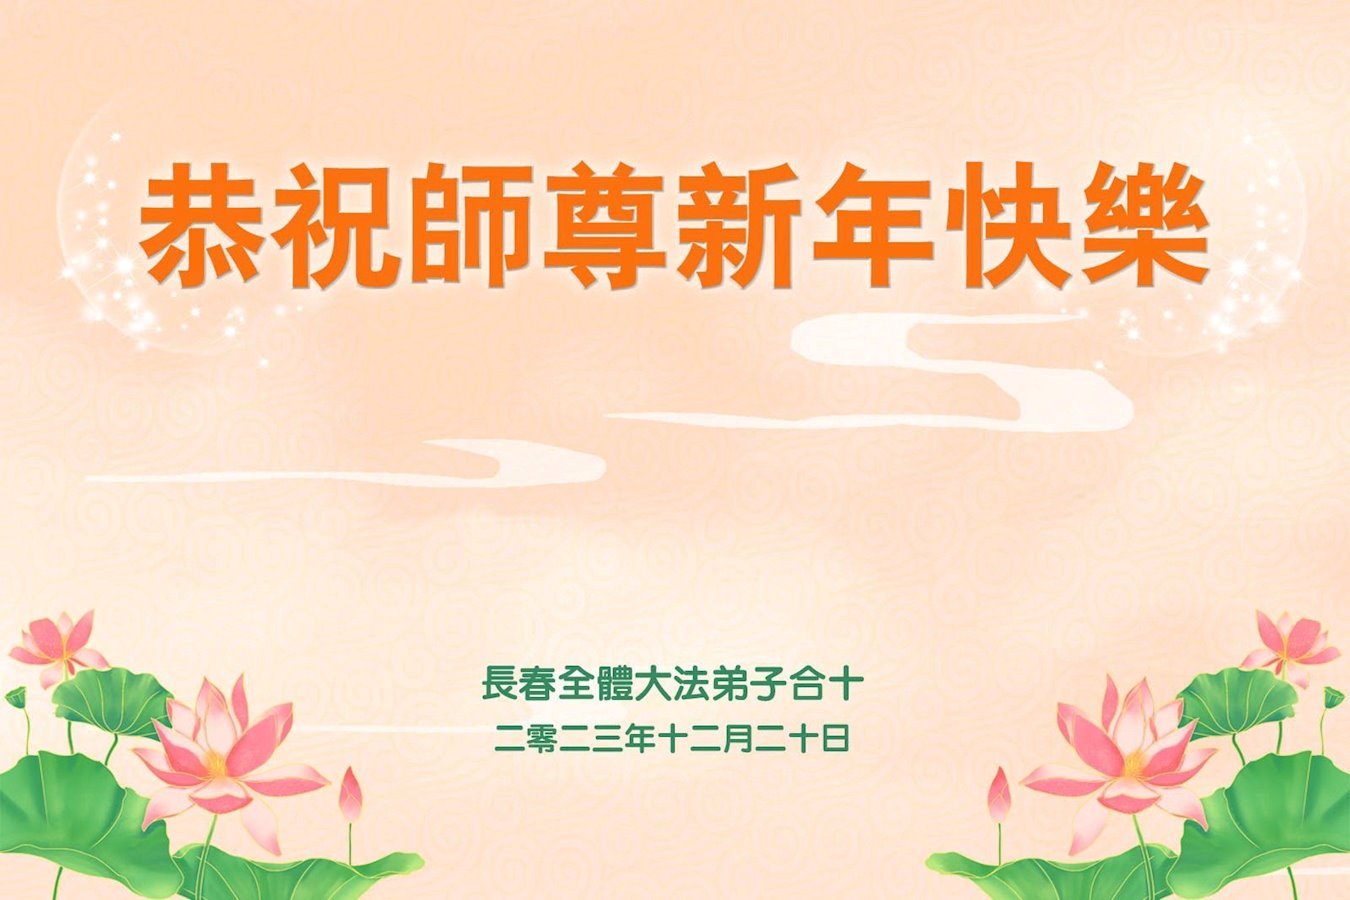 Image for article Les pratiquants de Falun Dafa de la ville de Changchun souhaitent respectueusement au vénérable Maître Li Hongzhi une Bonne et Heureuse Année ! (22 vœux)